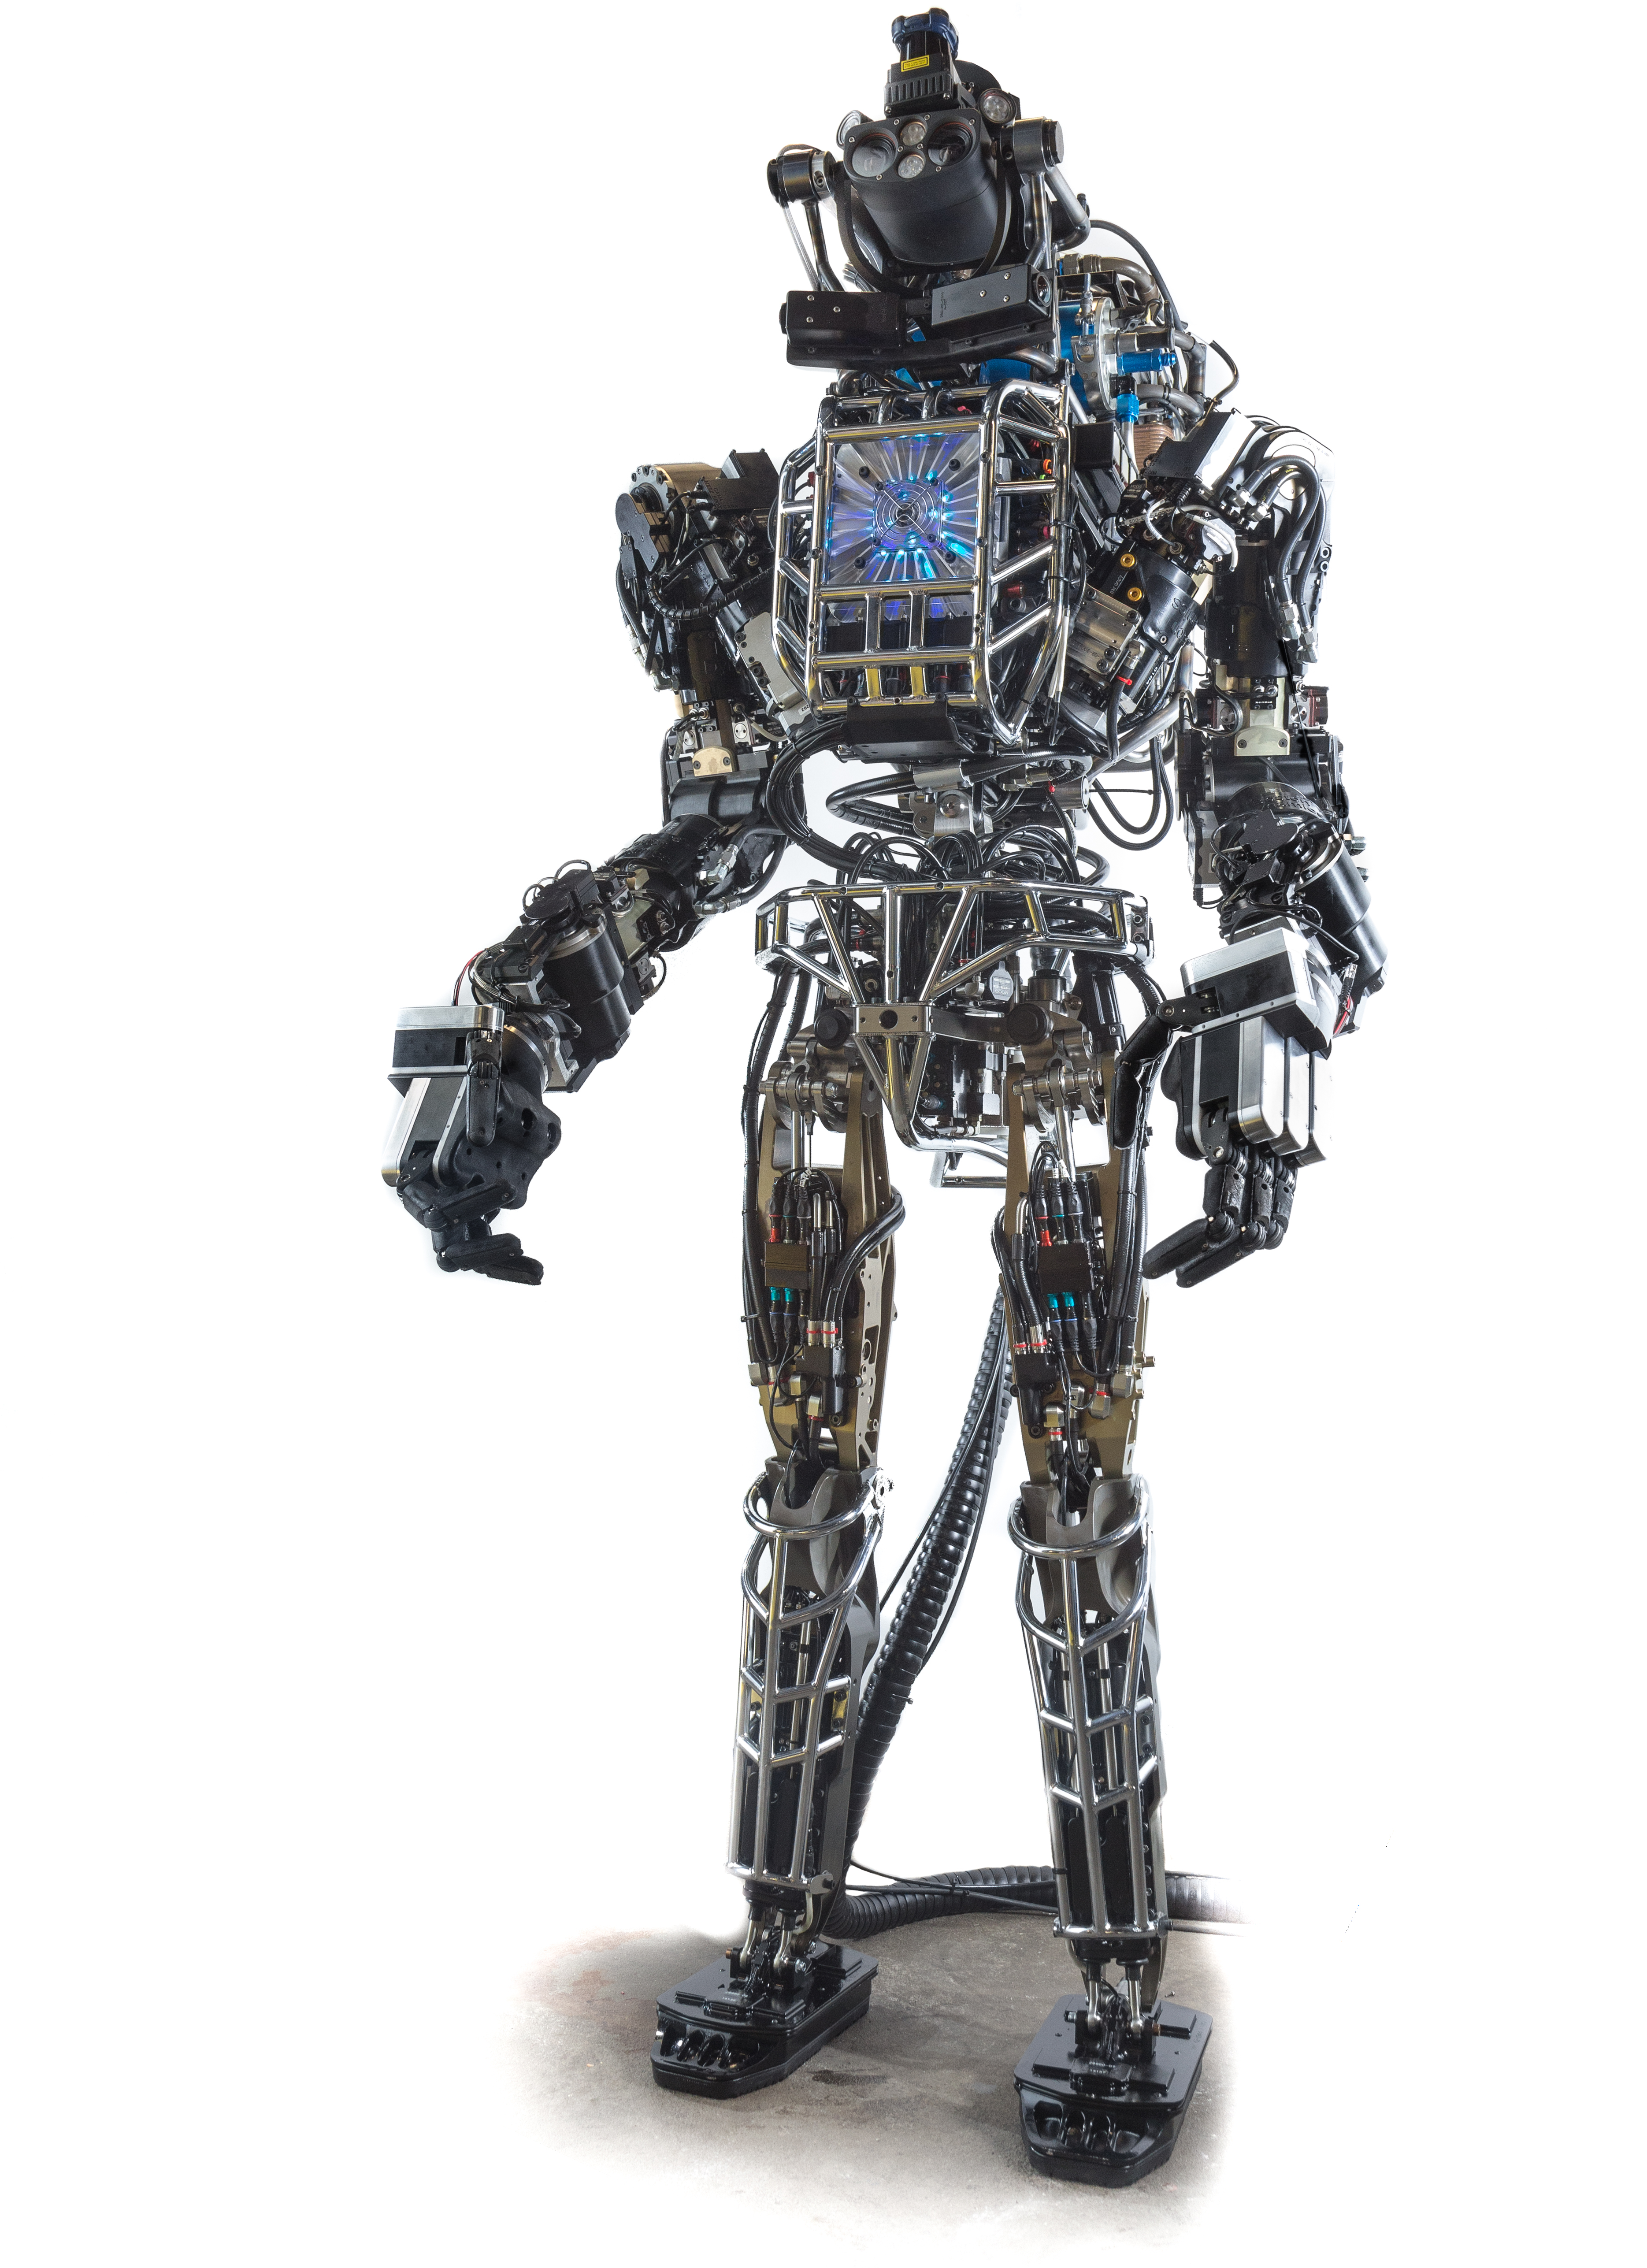 Atlas (robot) Wikipedia, libre